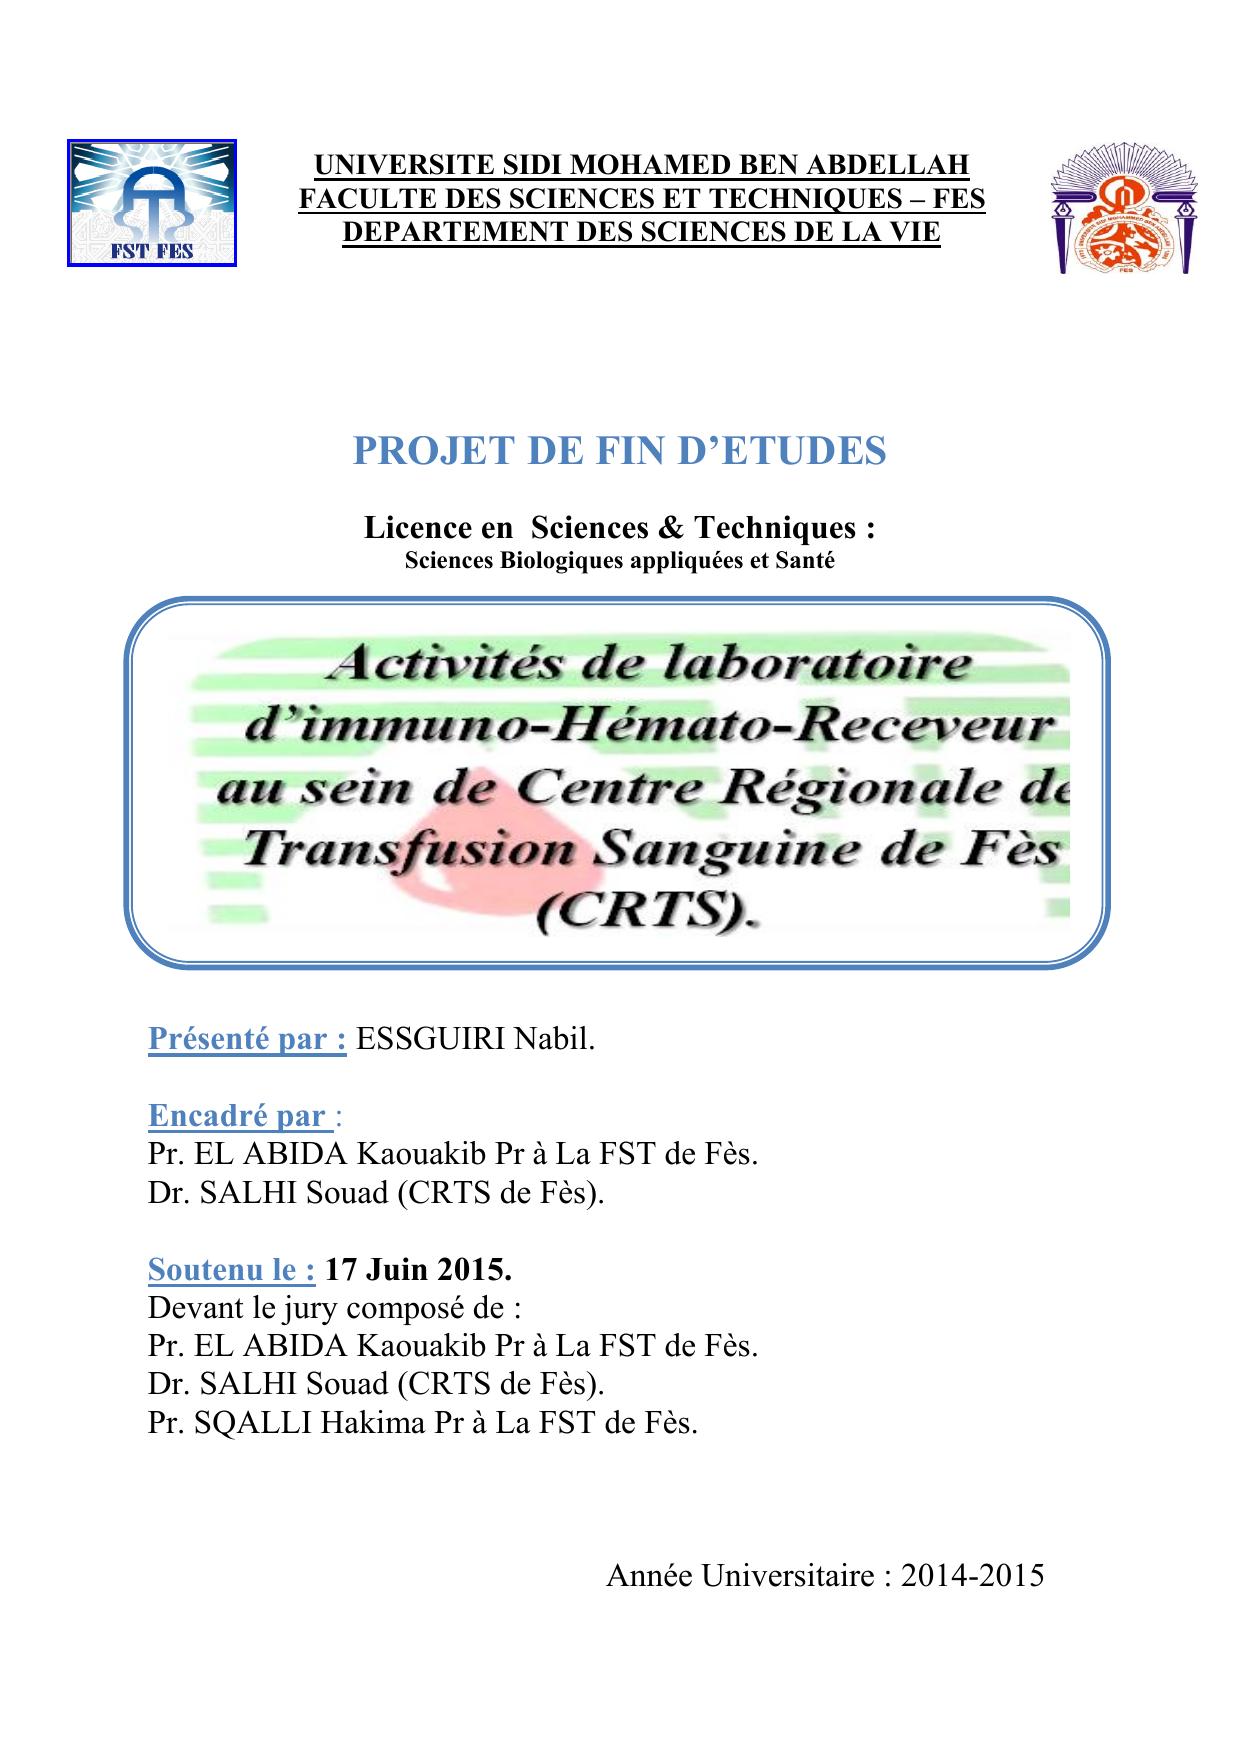 Activités de laboratoire d’immuno-Hémato-Receveur au sein de Centre Régionale de Transfusion Sanguine de Fès (CRTS)